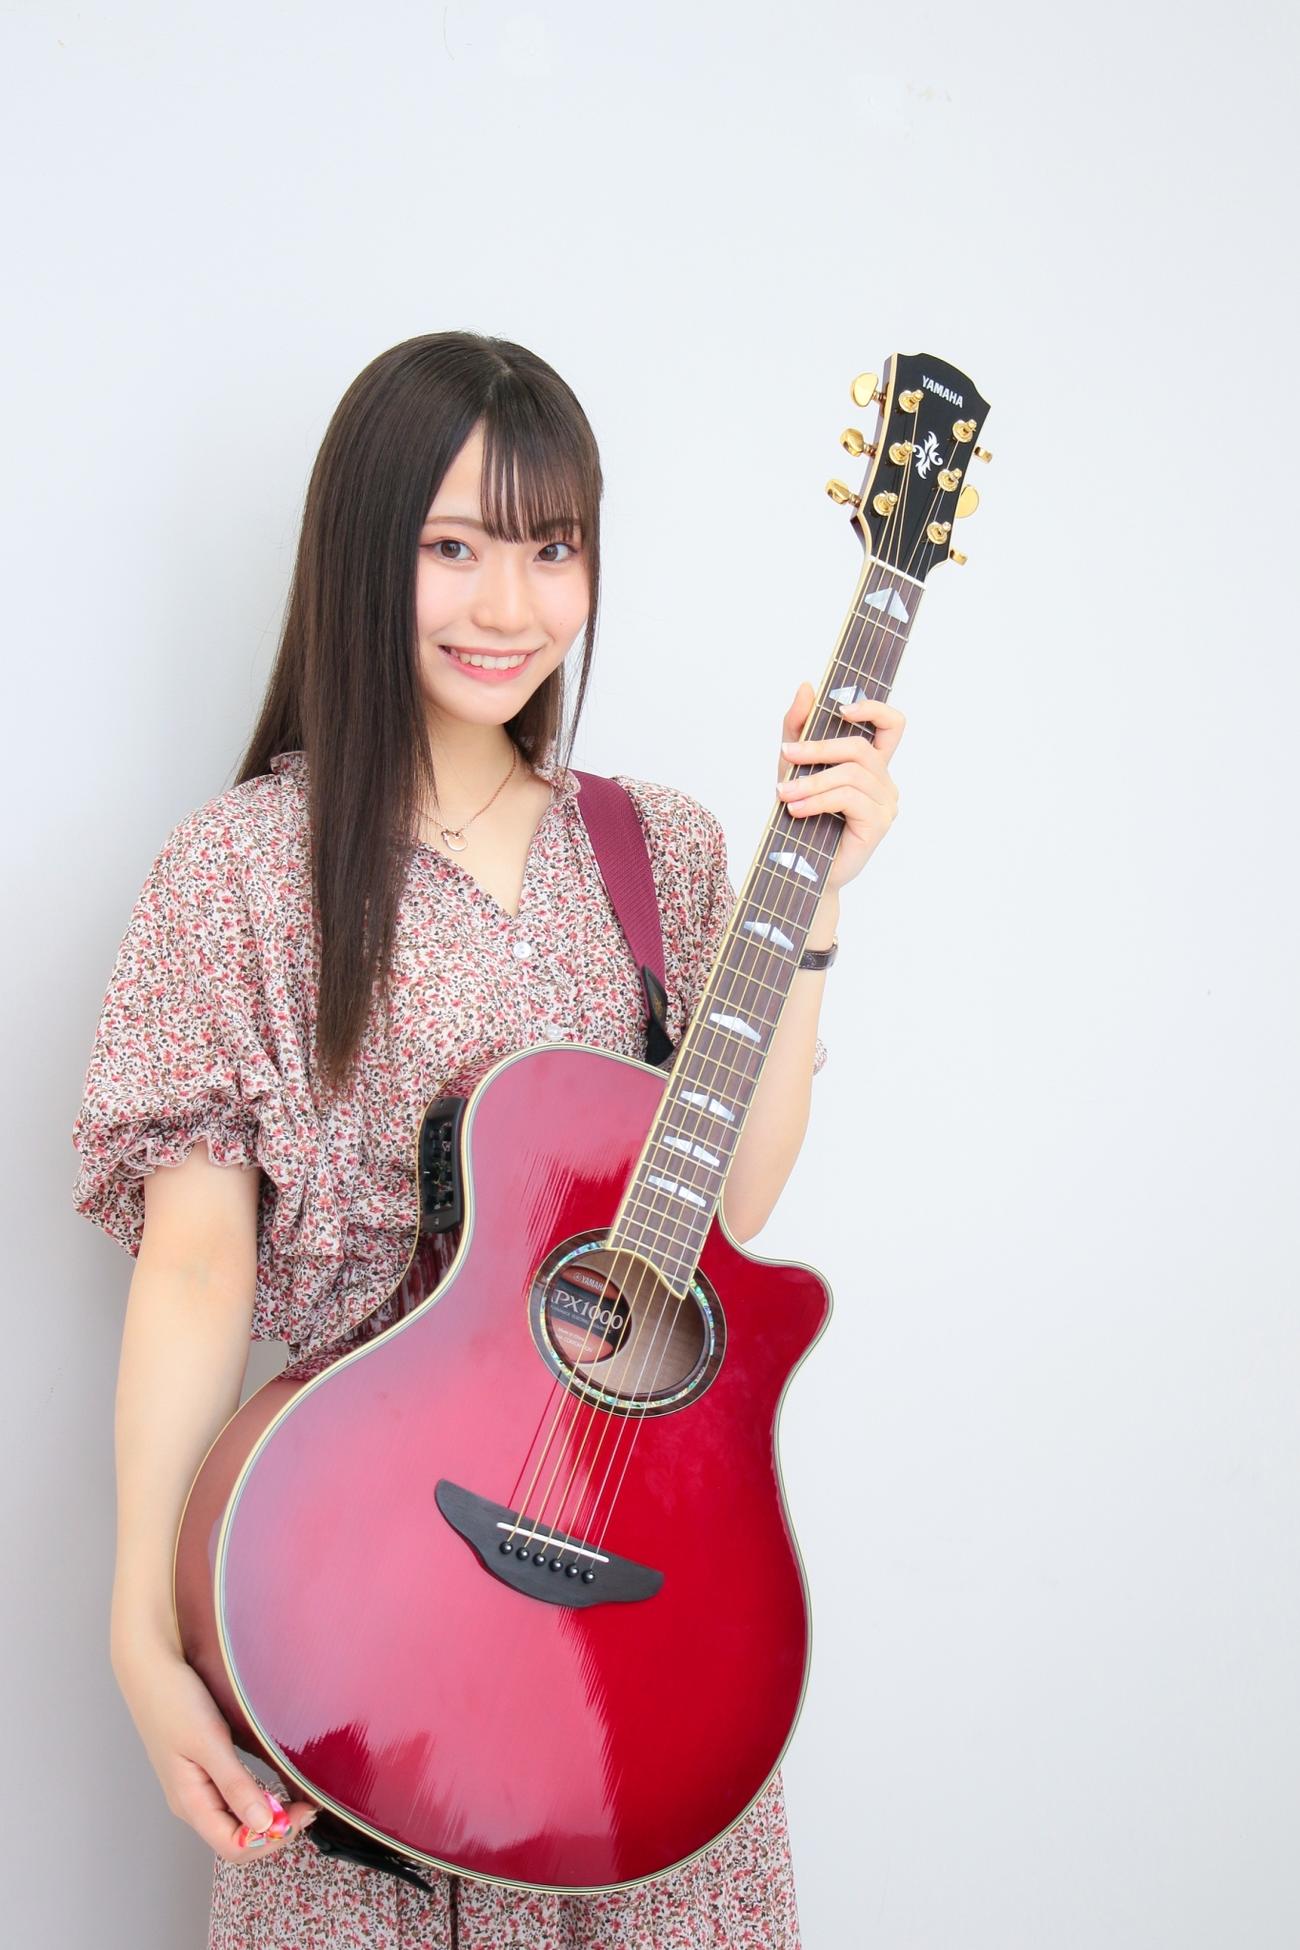 エレクトリックアコースティックギター「APX1000」を手にポーズを決めるNGT48の研究生・川越紗彩